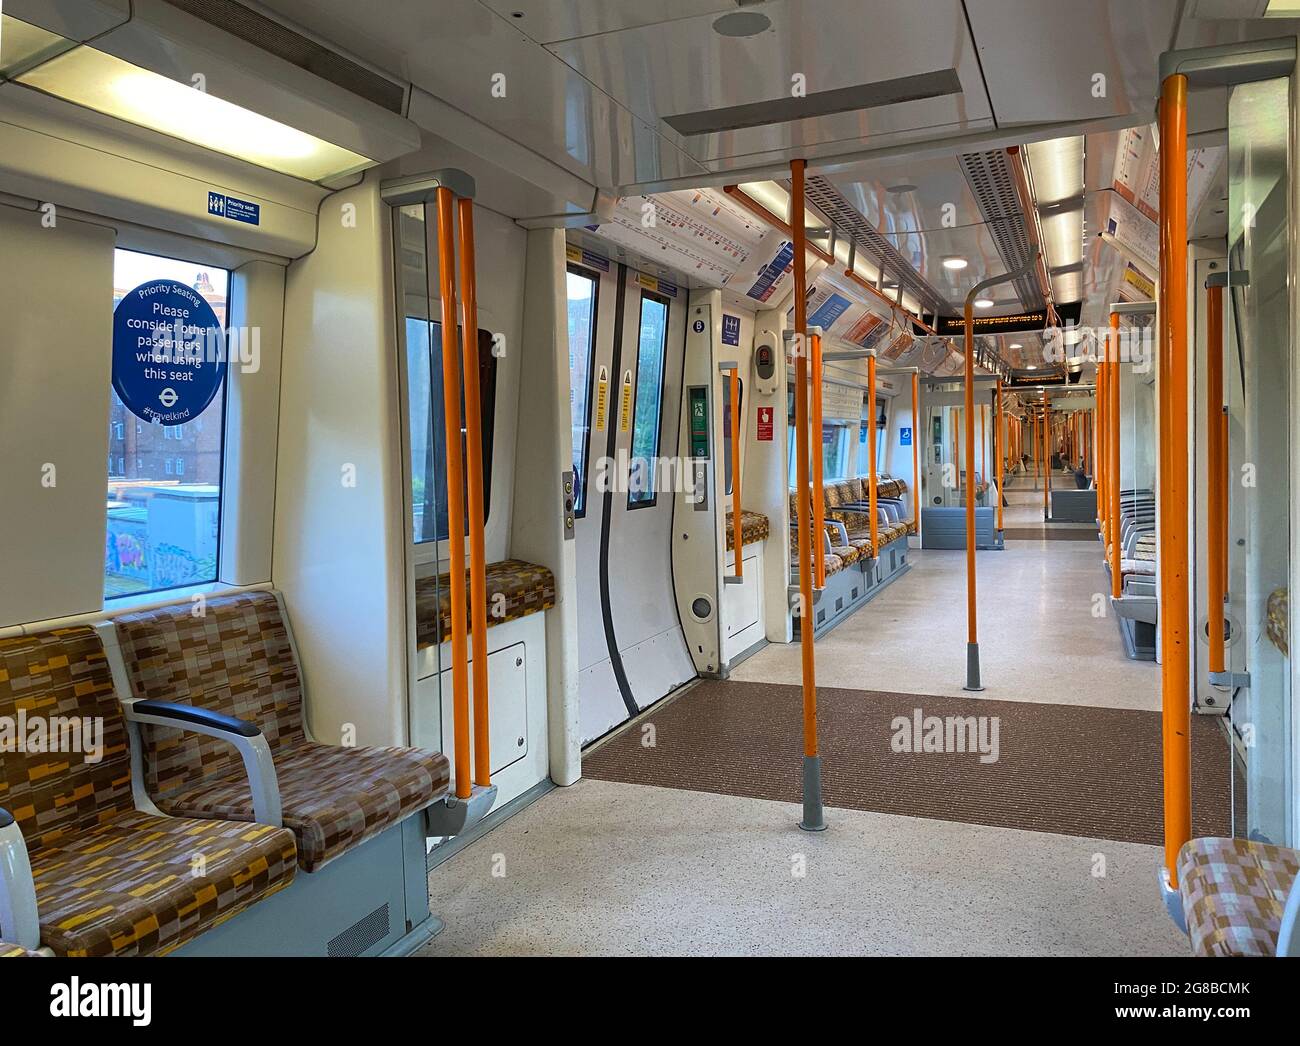 Un train terrestre dans une banlieue ouest de Londres est presque vide de passagers après la levée des dernières restrictions légales concernant le coronavirus en Angleterre. Date de la photo: Lundi 19 juillet 2021. Banque D'Images